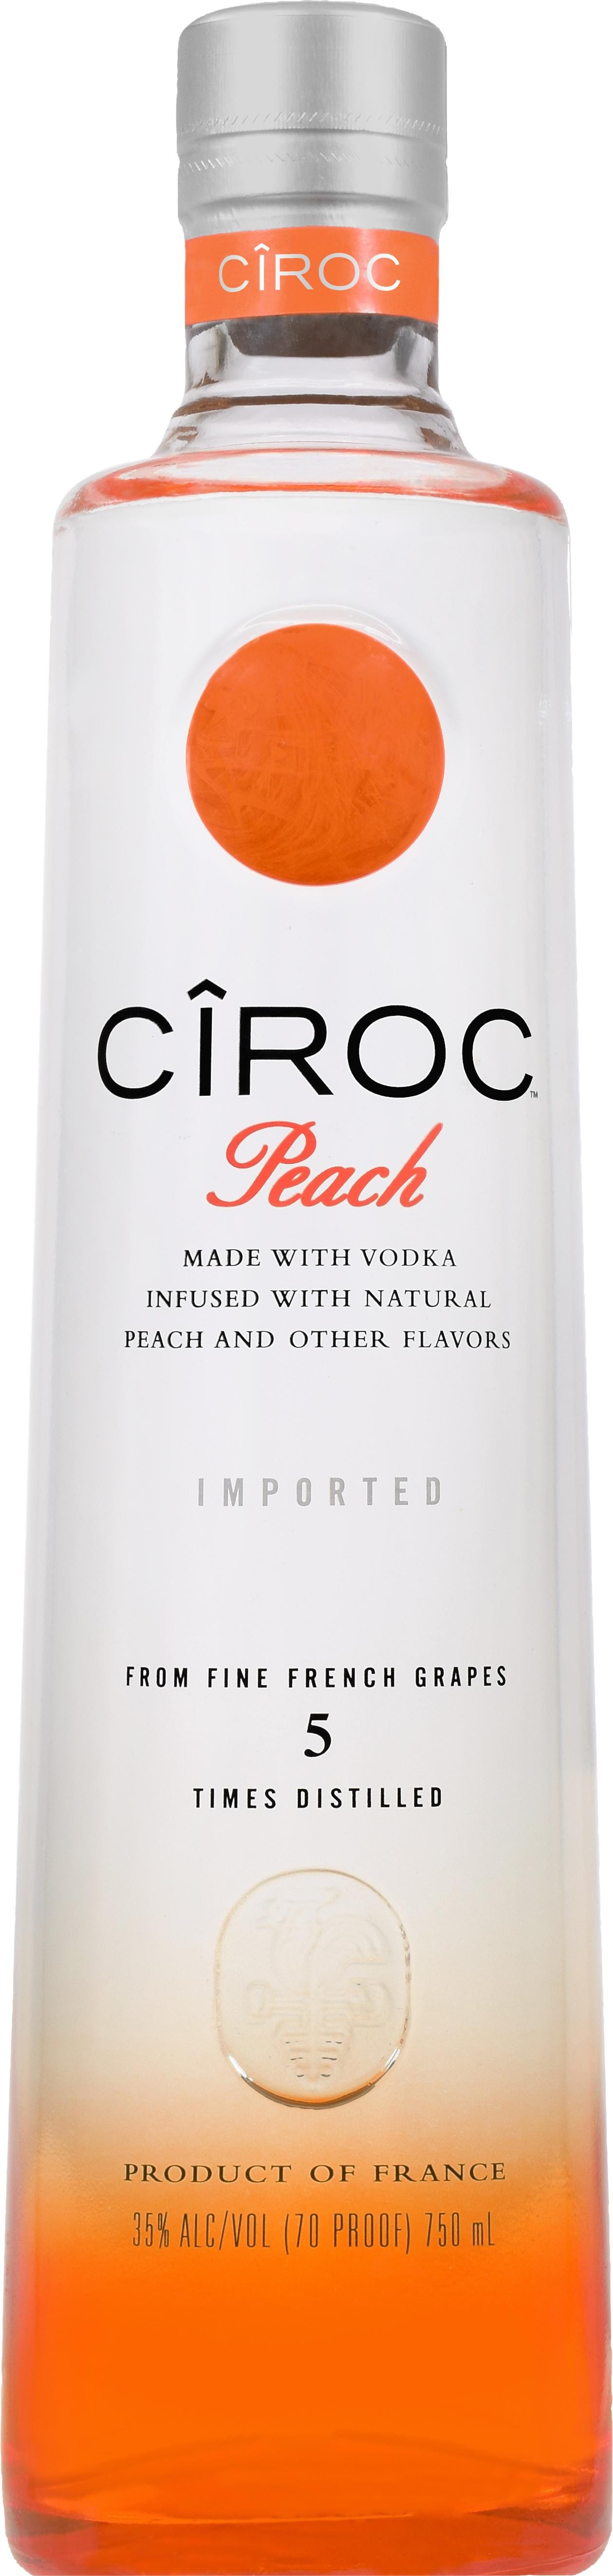 CIROC Peach Flavored Vodka - 750ml Bottle